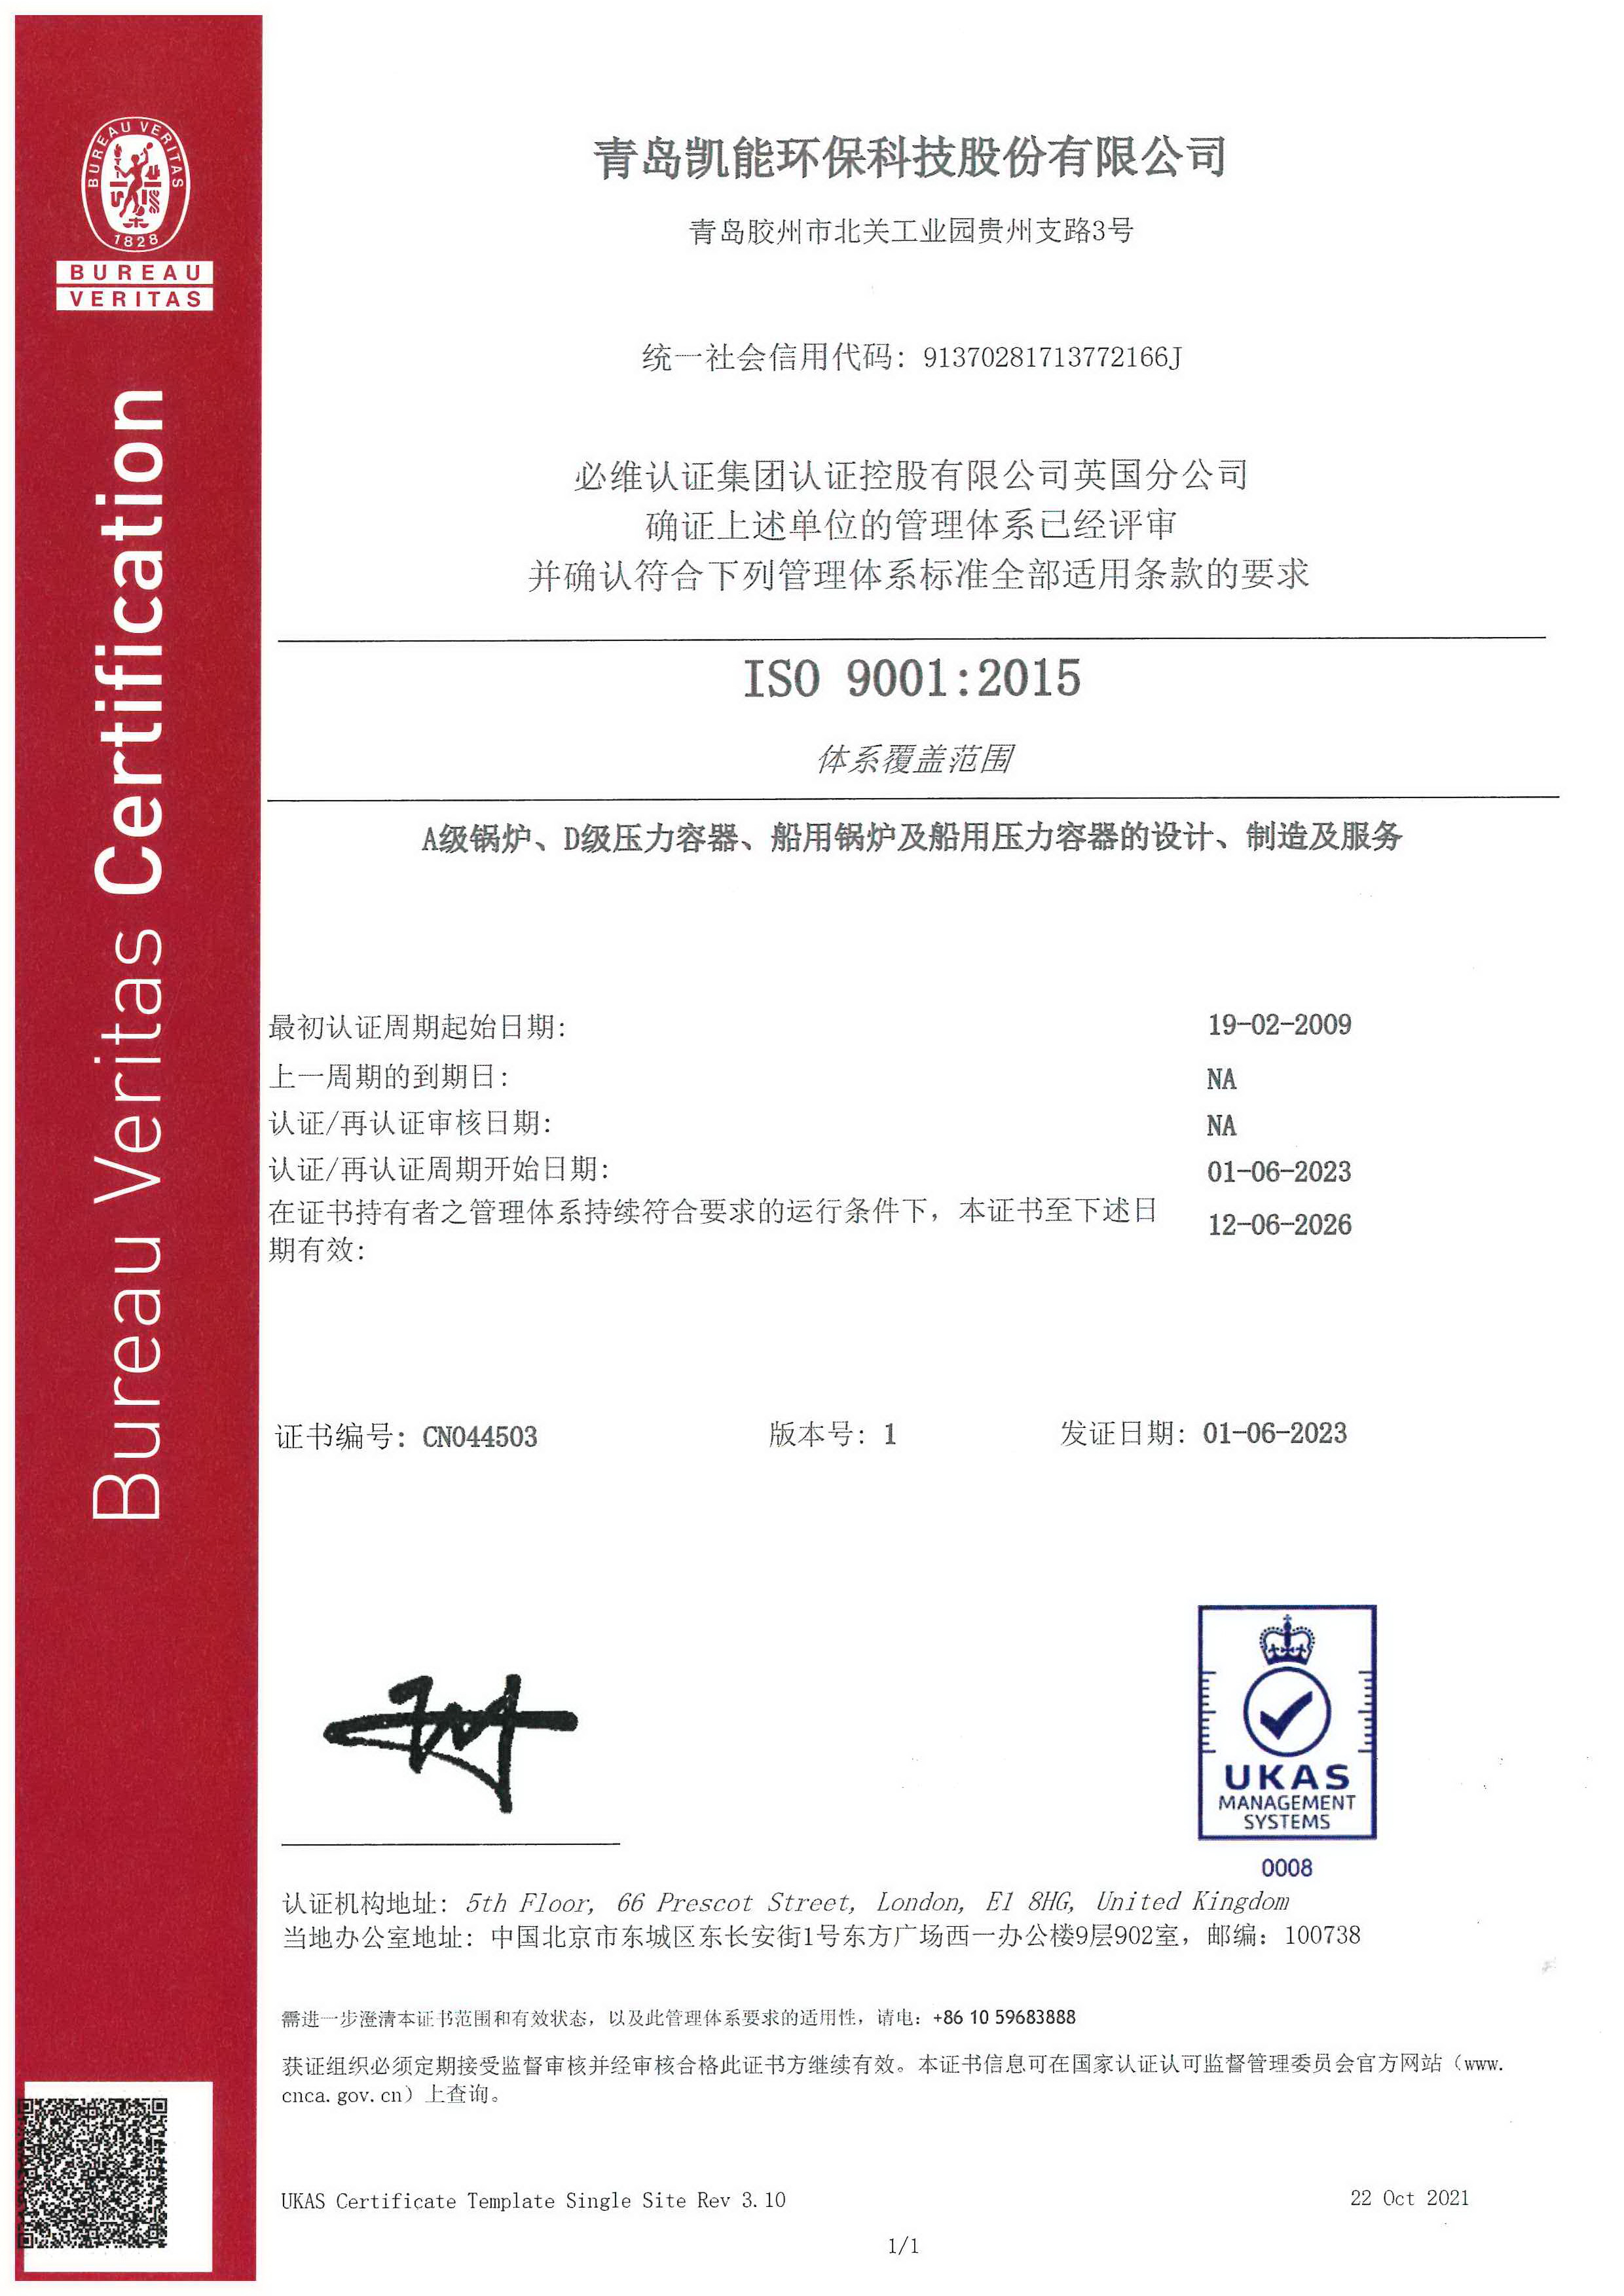 凯能科技 ISO 9001质量体系认证证书